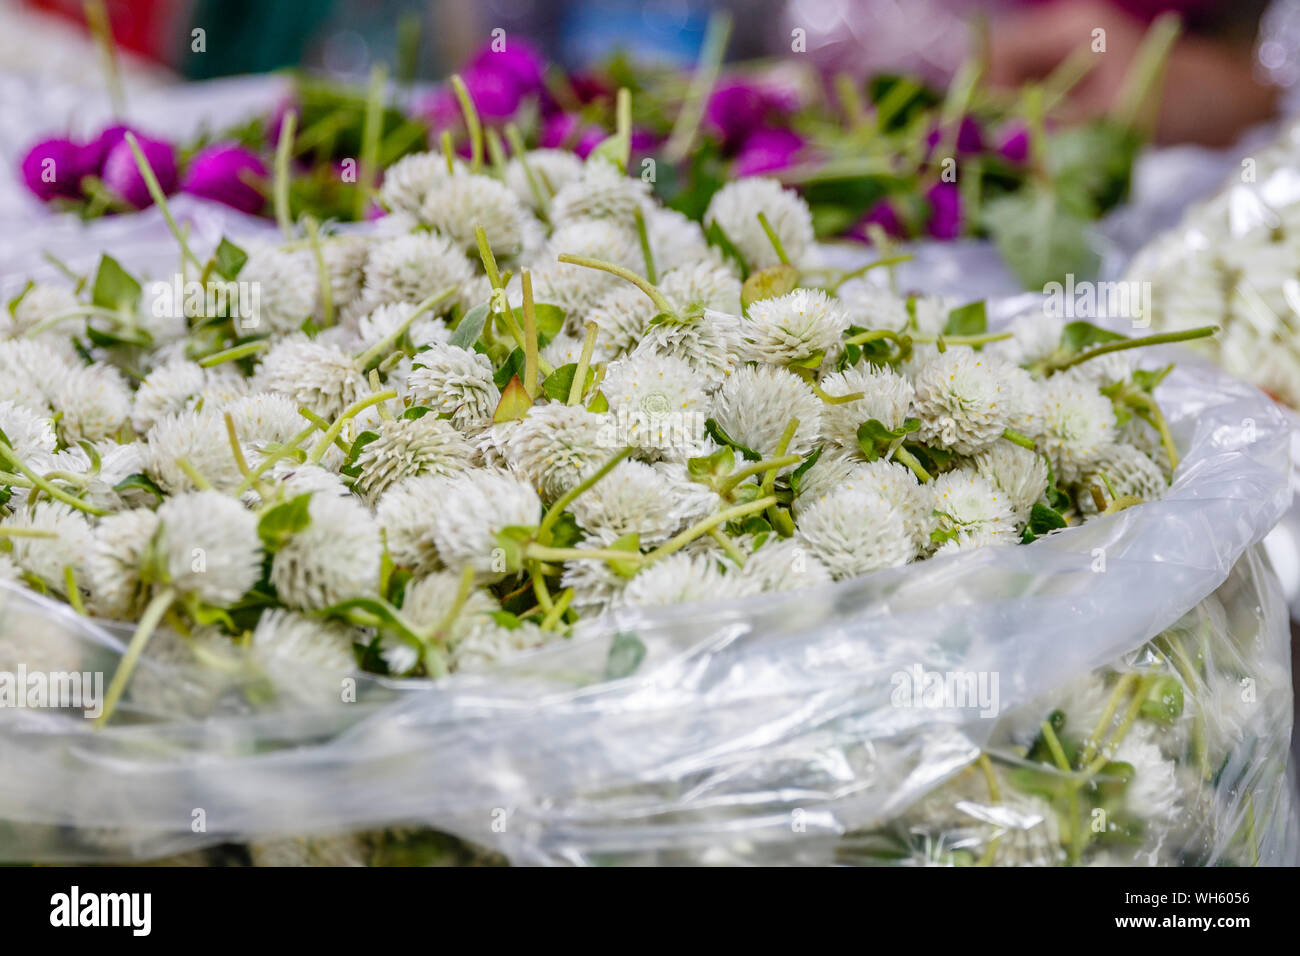 Sacchetti di сlover bianco trifoglio o per rendere tradizionali ghirlanda di fiori offerte phuang malai a Pak Khlong Talat, Bangkok il mercato dei fiori. Della Thailandia Foto Stock